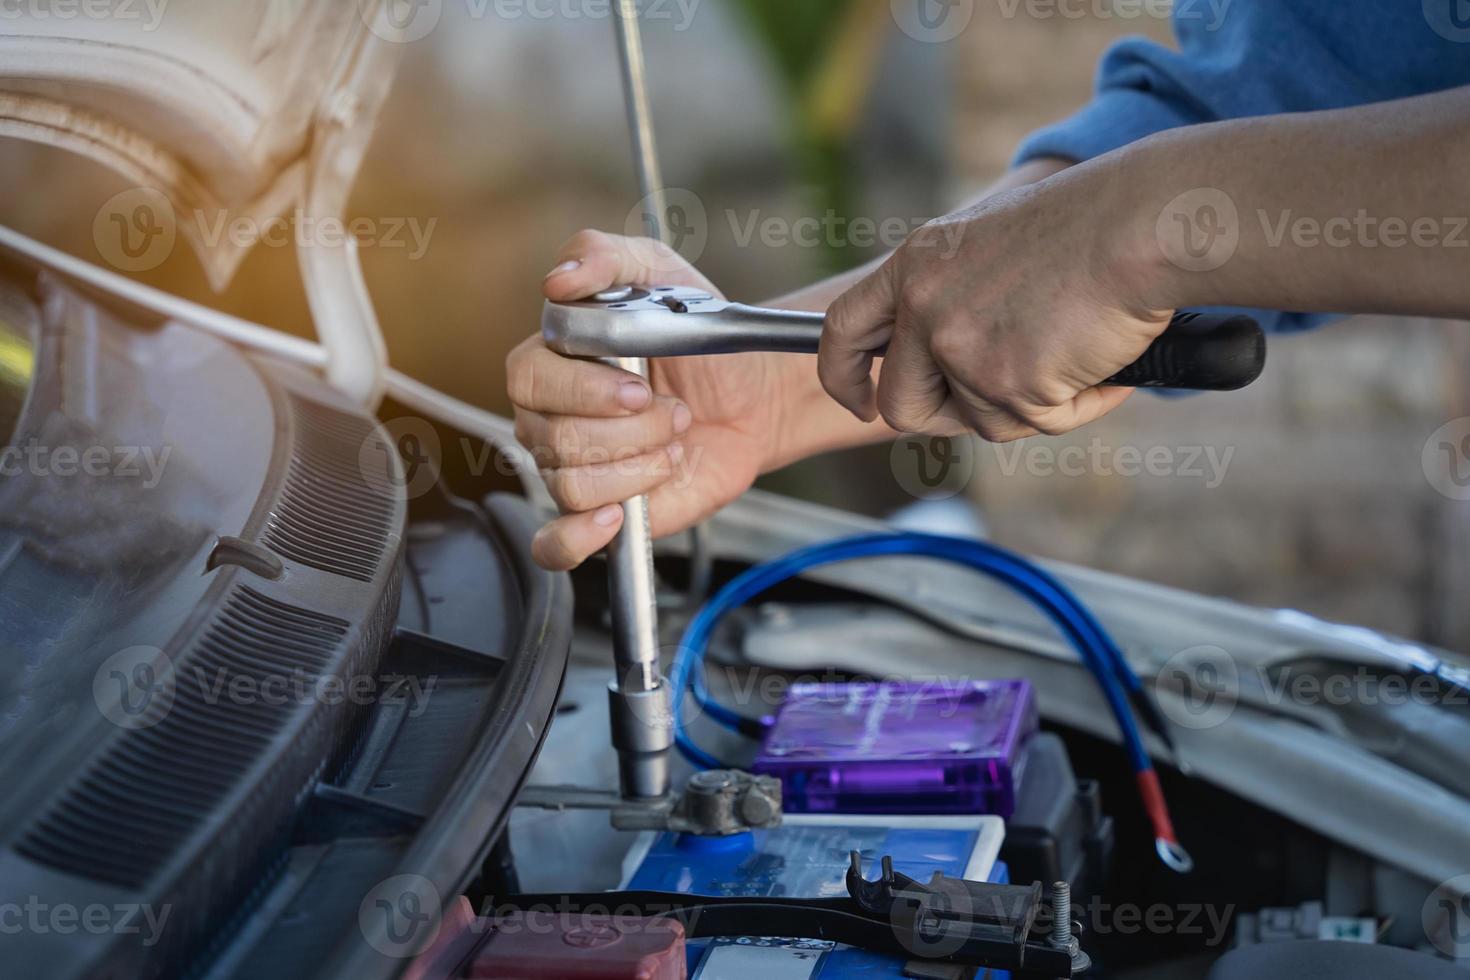 Reparatur und Einbau der Batterie. der mann zieht mit einem schraubenschlüssel die schrauben zur befestigung einer neuen batterie an und installiert ersatzteile für ein auto. foto